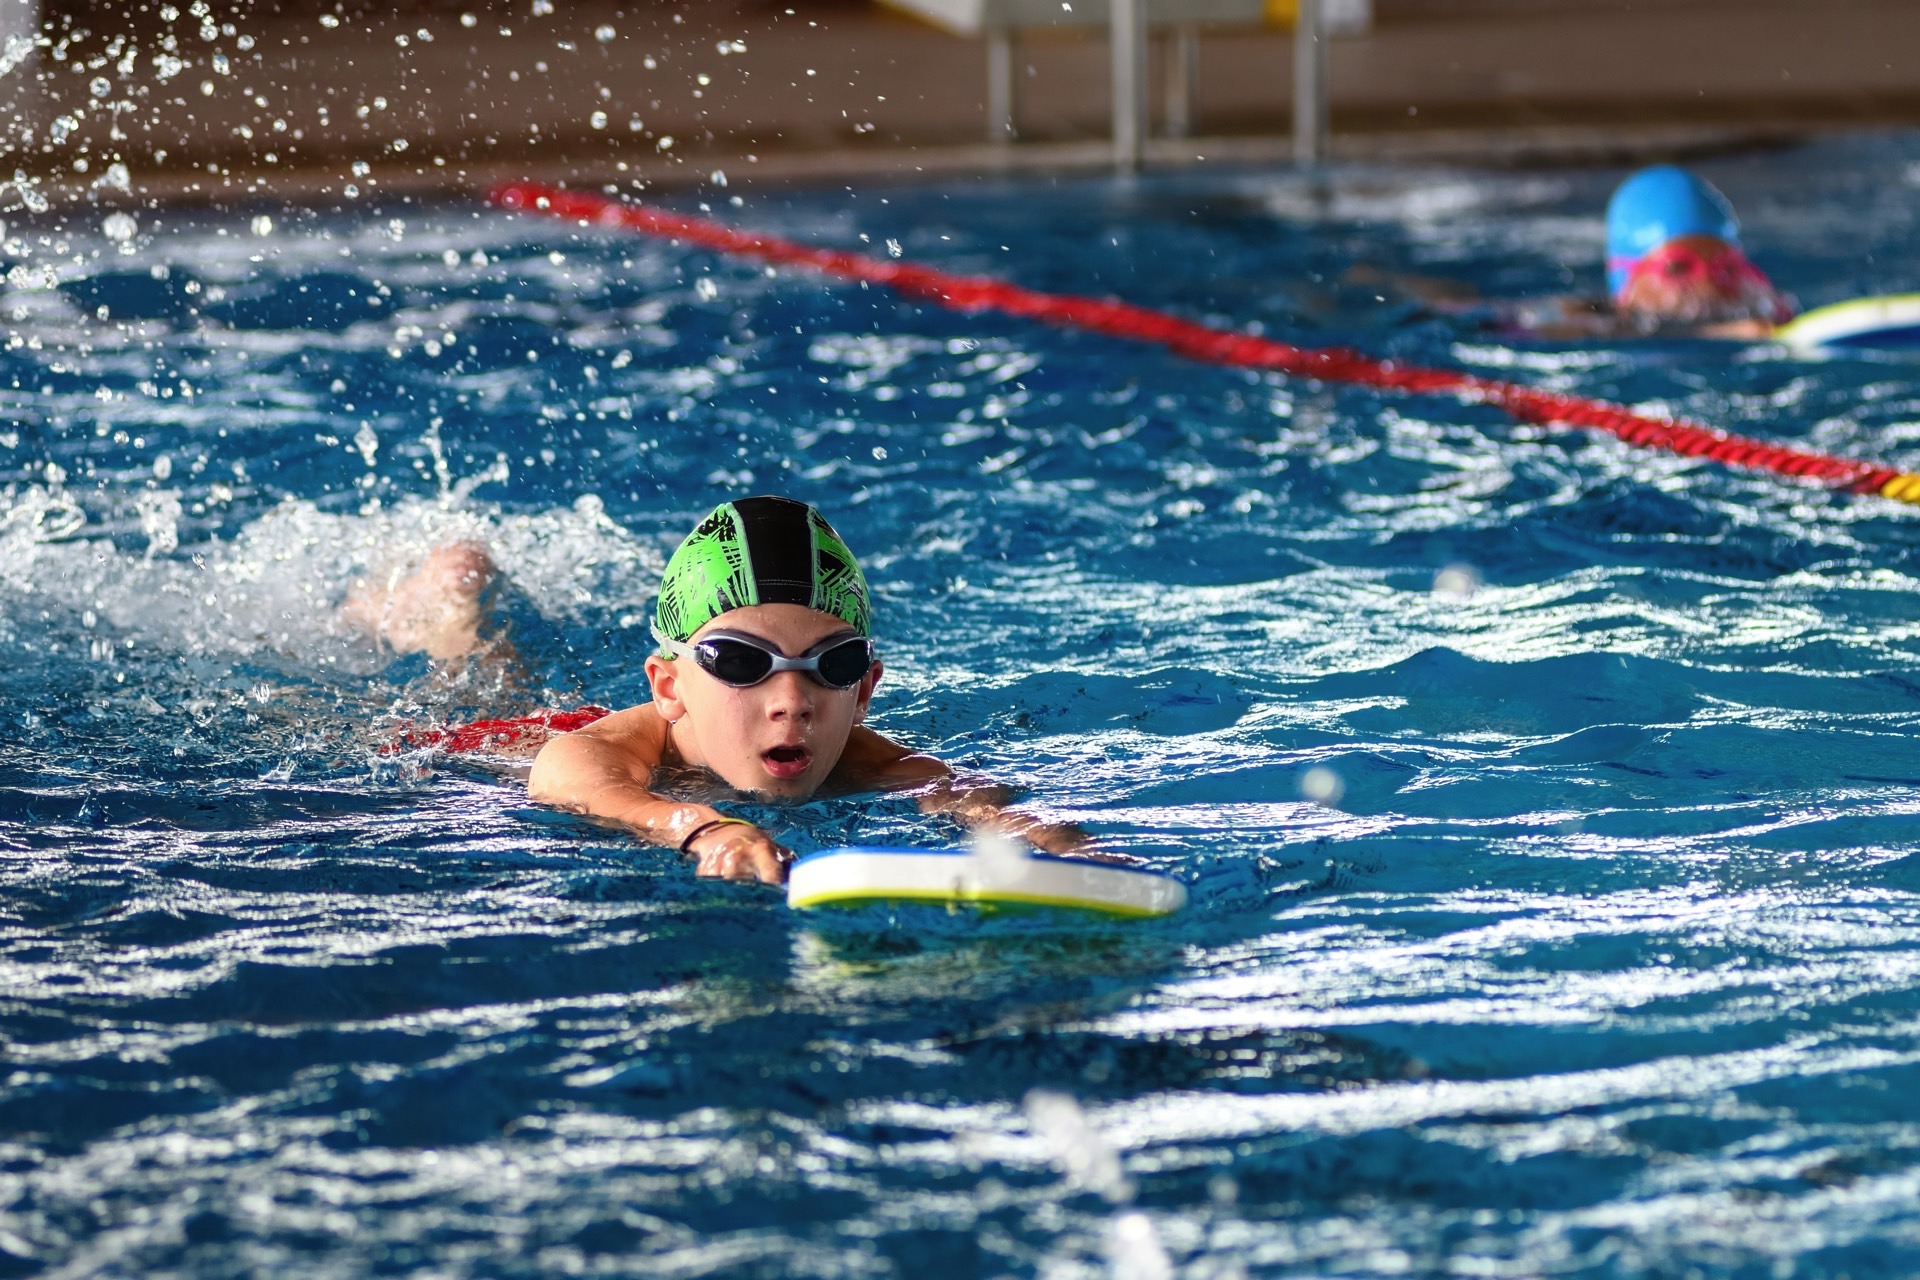 https://kolorline.hu/Ingyenes úszásoktatás — mintegy 160 kisdiák sajátíthatja el a sportág alapjait